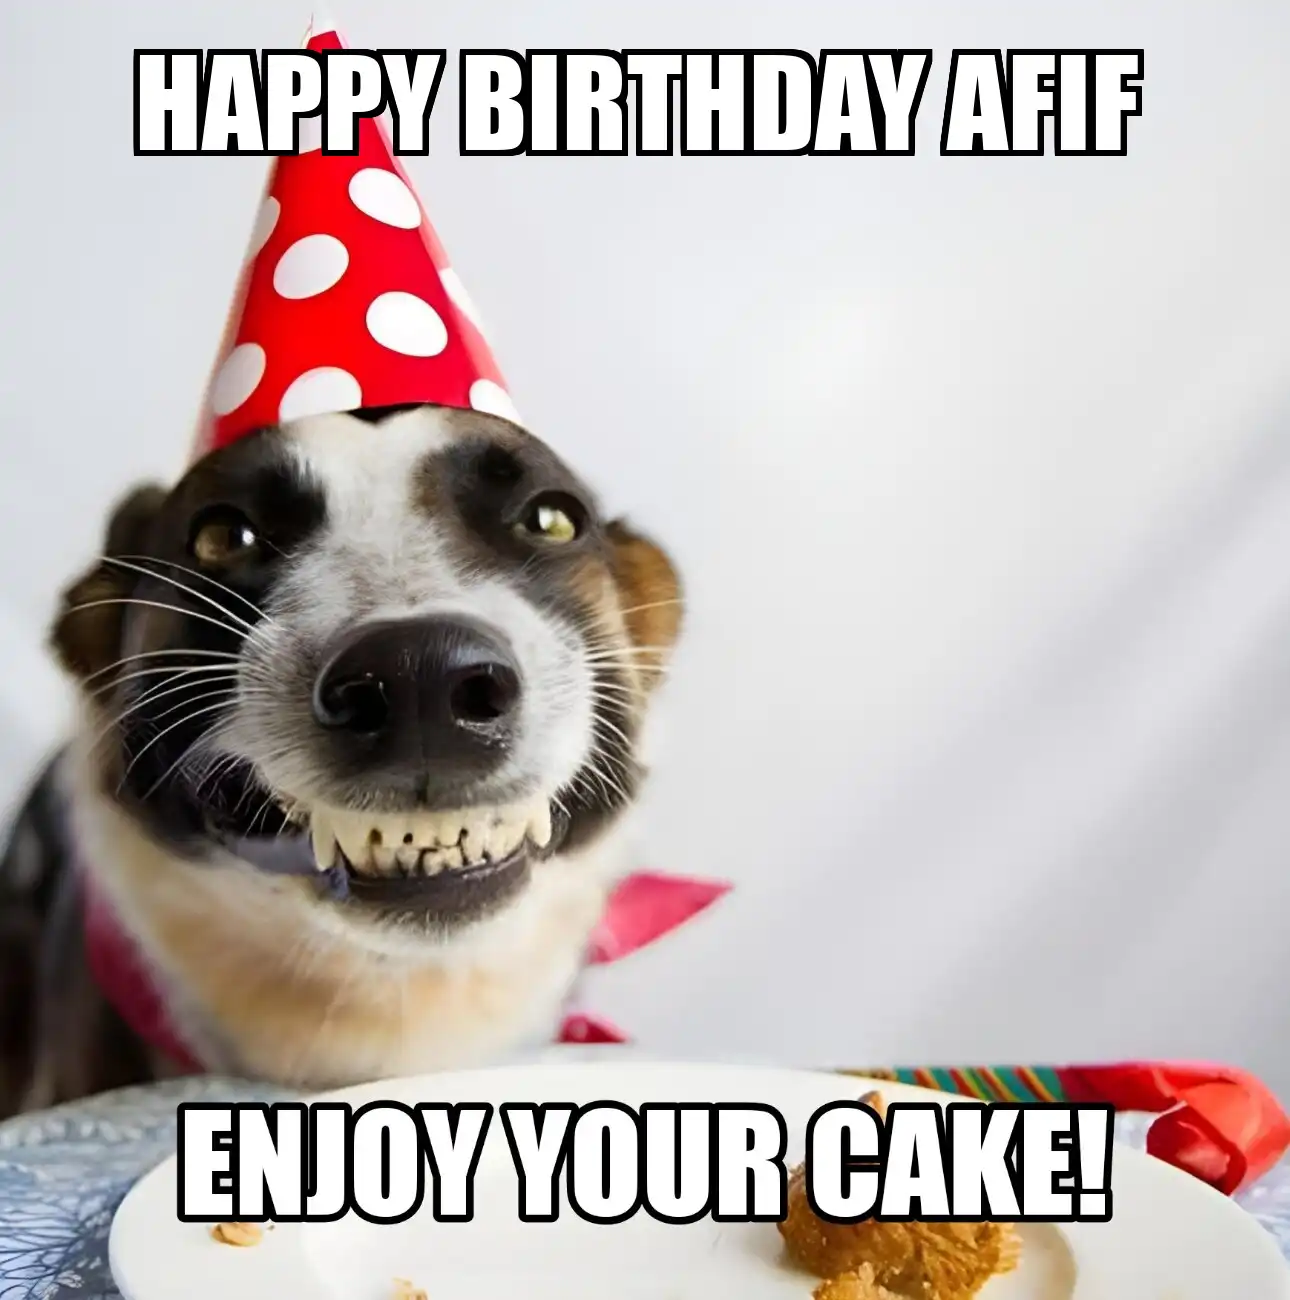 Happy Birthday Afif Enjoy Your Cake Dog Meme